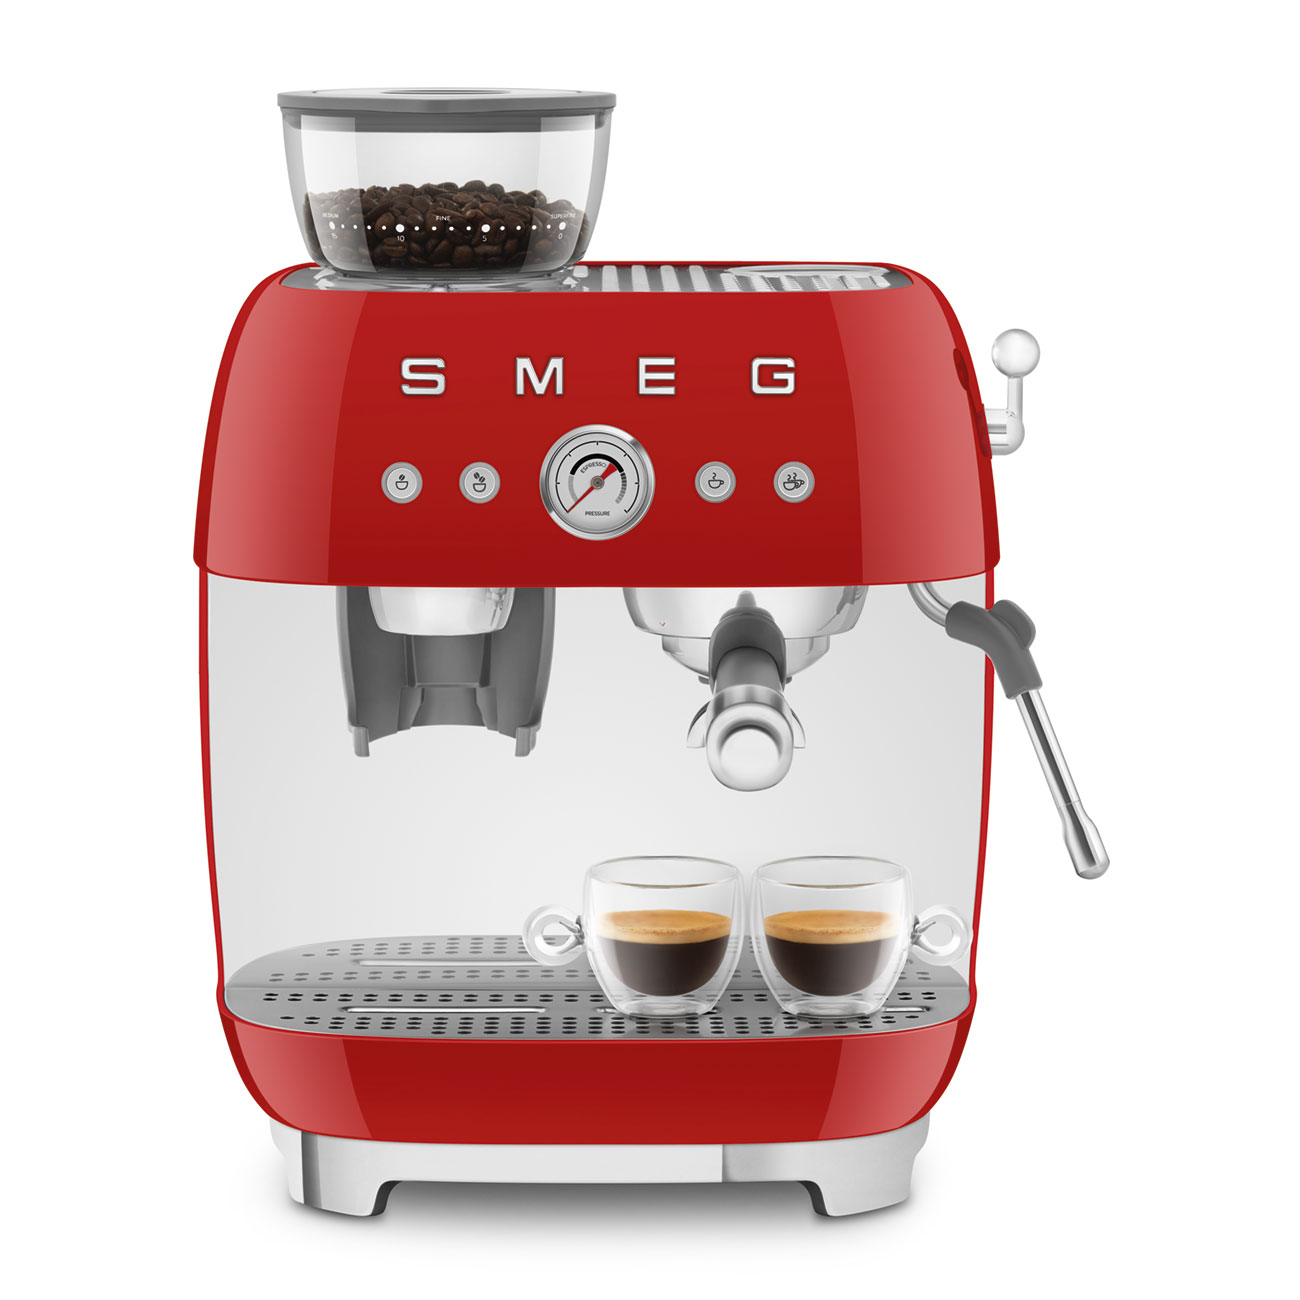 Smeg Rouge Machine à café expresso manuelle avec broyeur à grain intégré_8